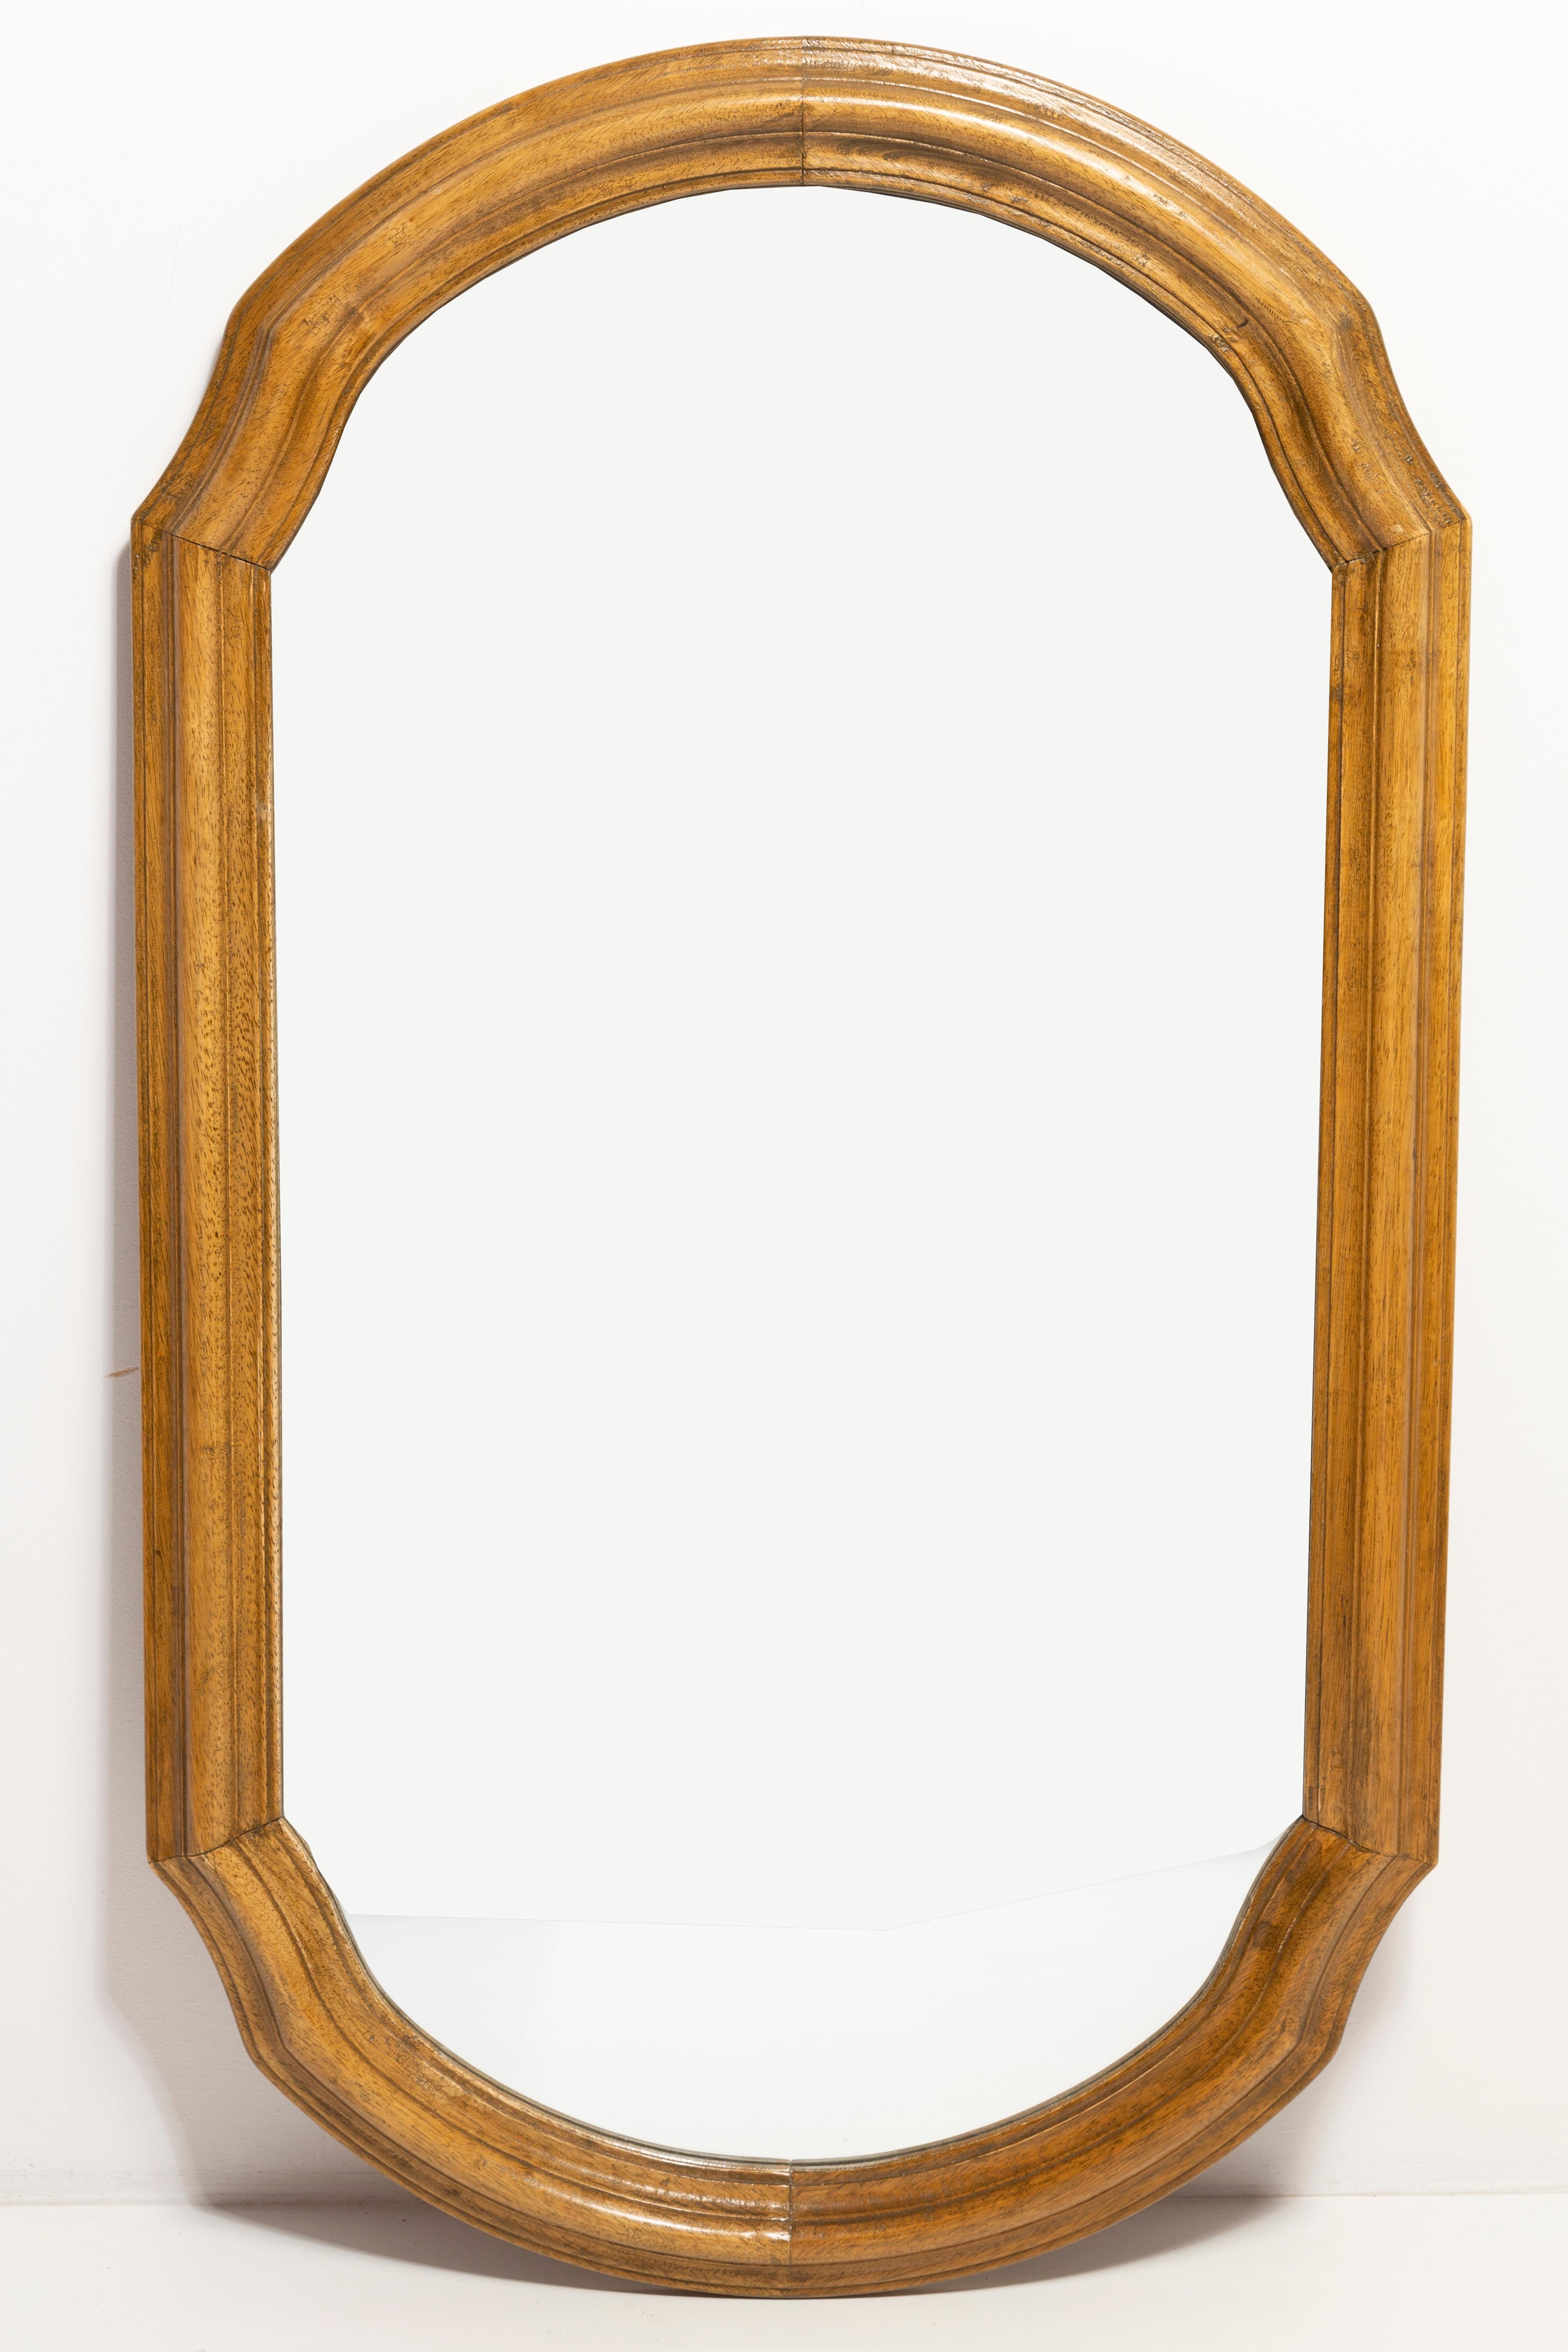 Schöner Spiegel in einem dekorativen Rahmen aus Italien. Der Rahmen ist aus Holz gefertigt. Der Spiegel ist in sehr gutem Vintage-Zustand. Original Glas. Erstaunliche Patina. Ein schönes Stück für jedes Interieur! Nur ein einziges Stück.